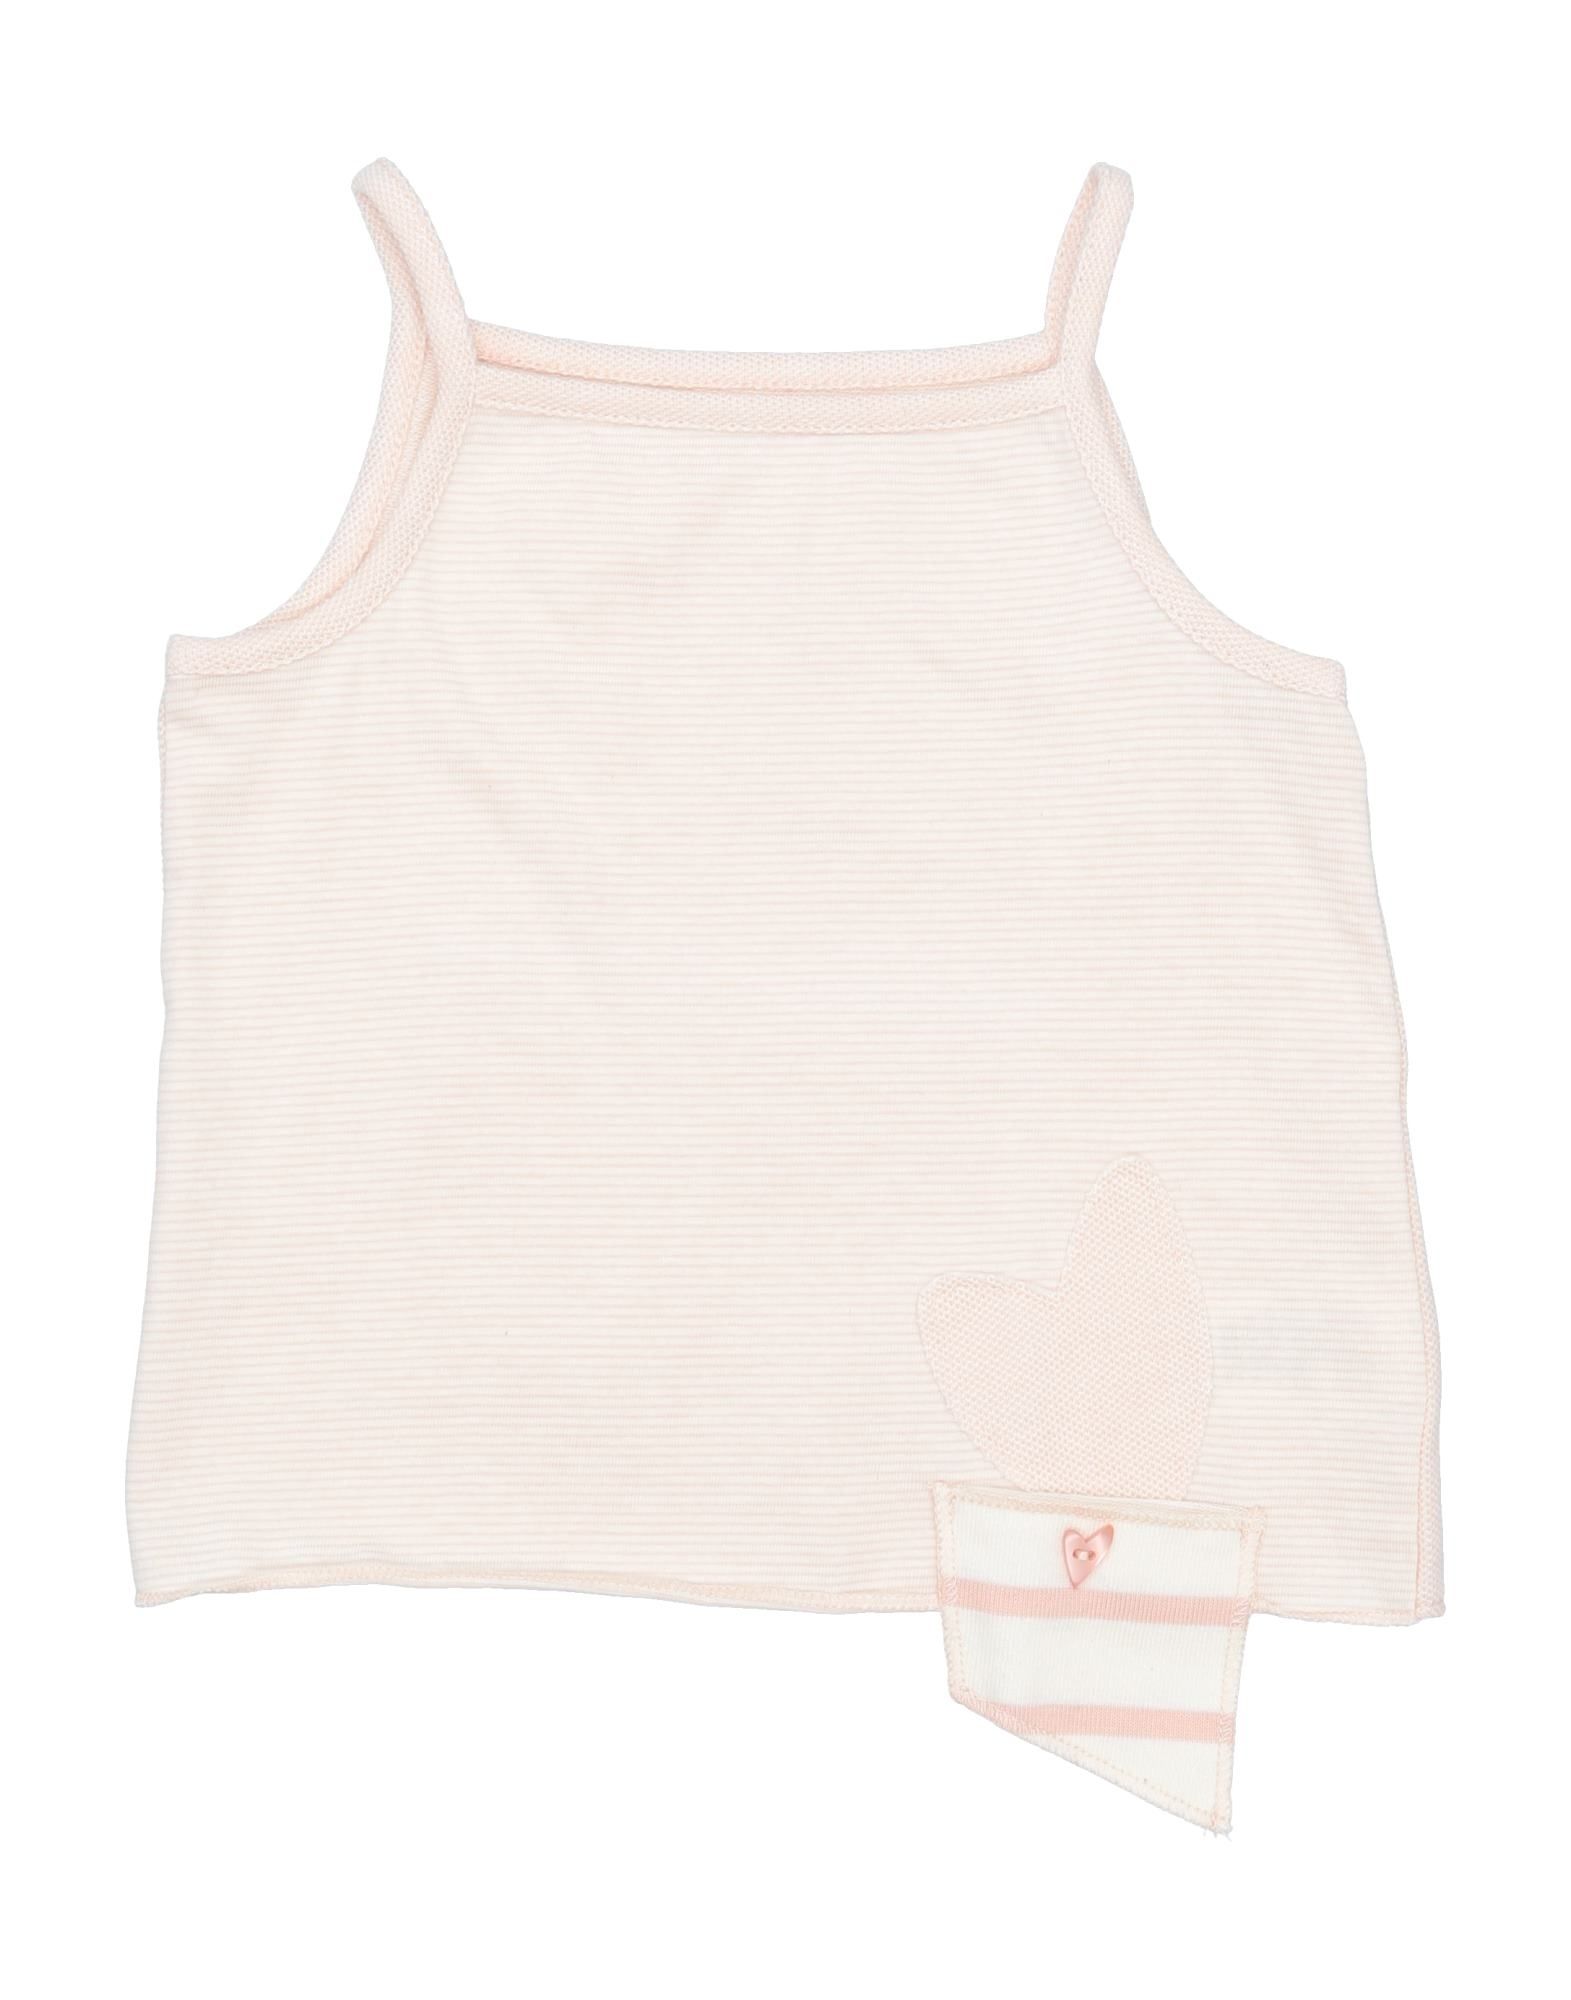 Shop Frugoo Newborn Girl T-shirt Light Pink Size 1 Cotton